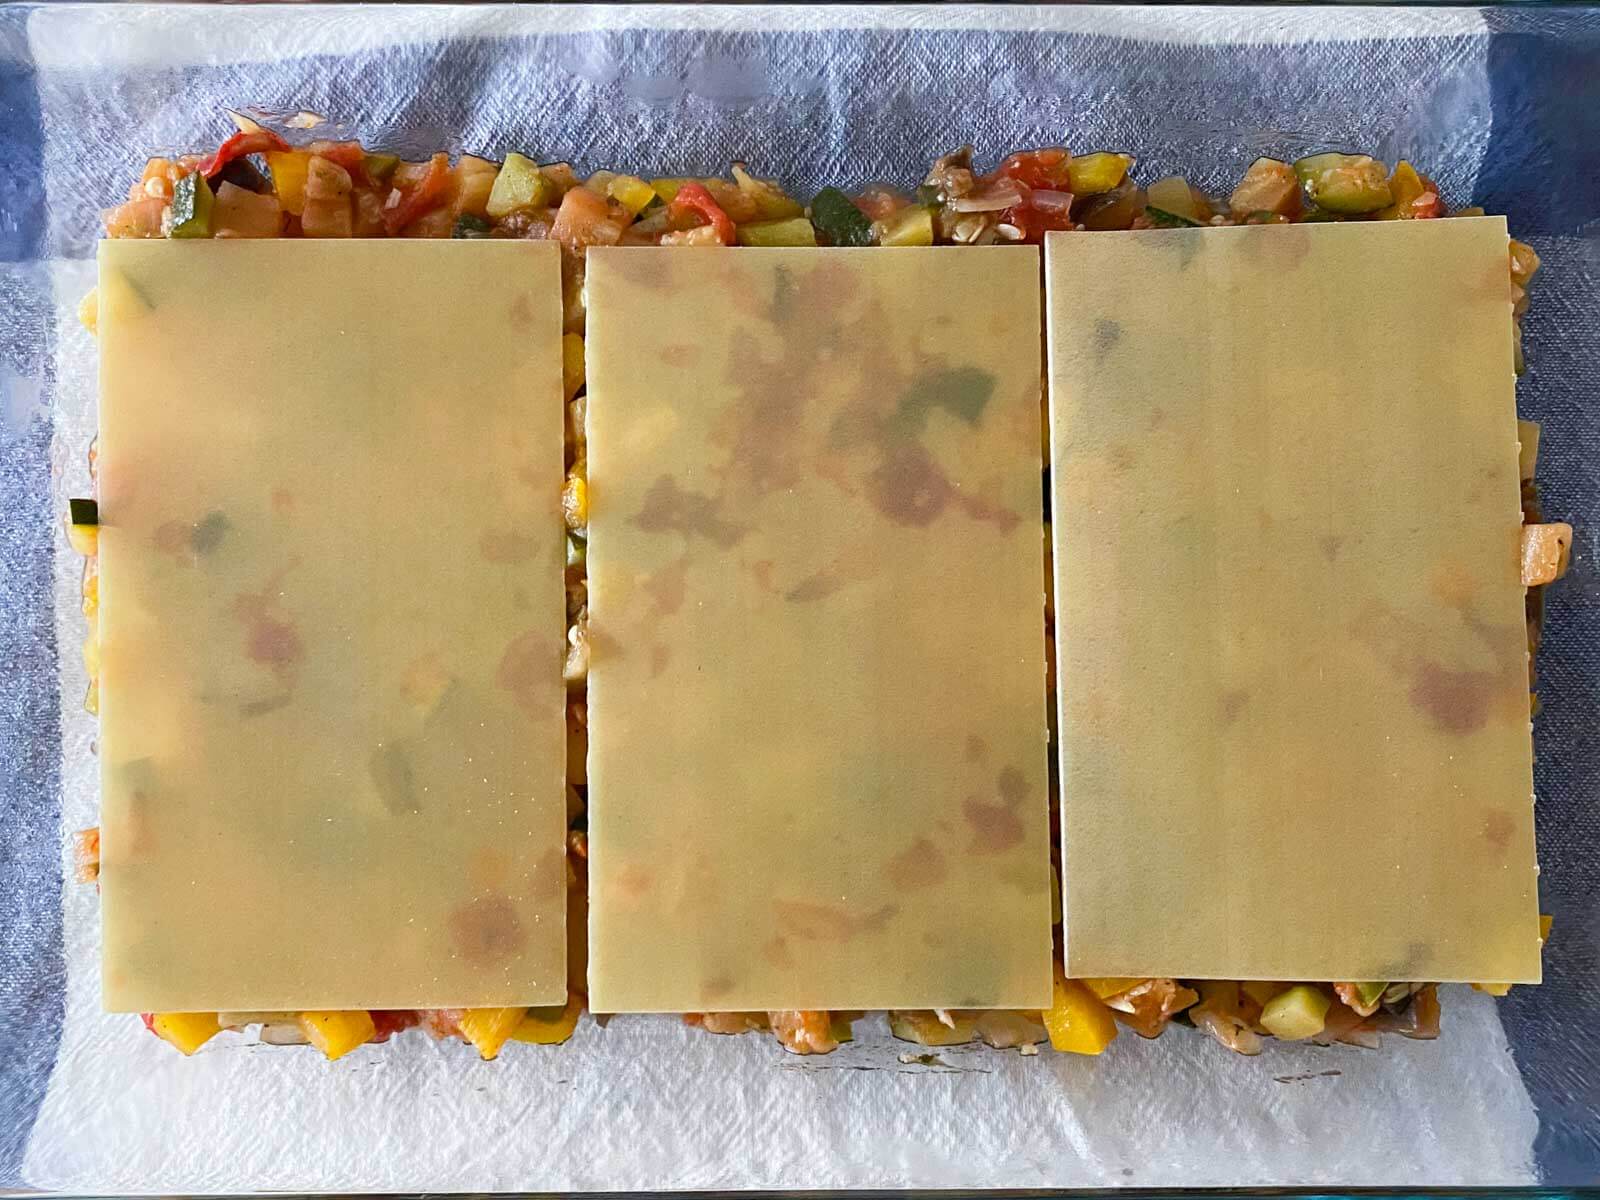 drei lasagneplatten auf ratatouillegemüse in einer auflaufform.